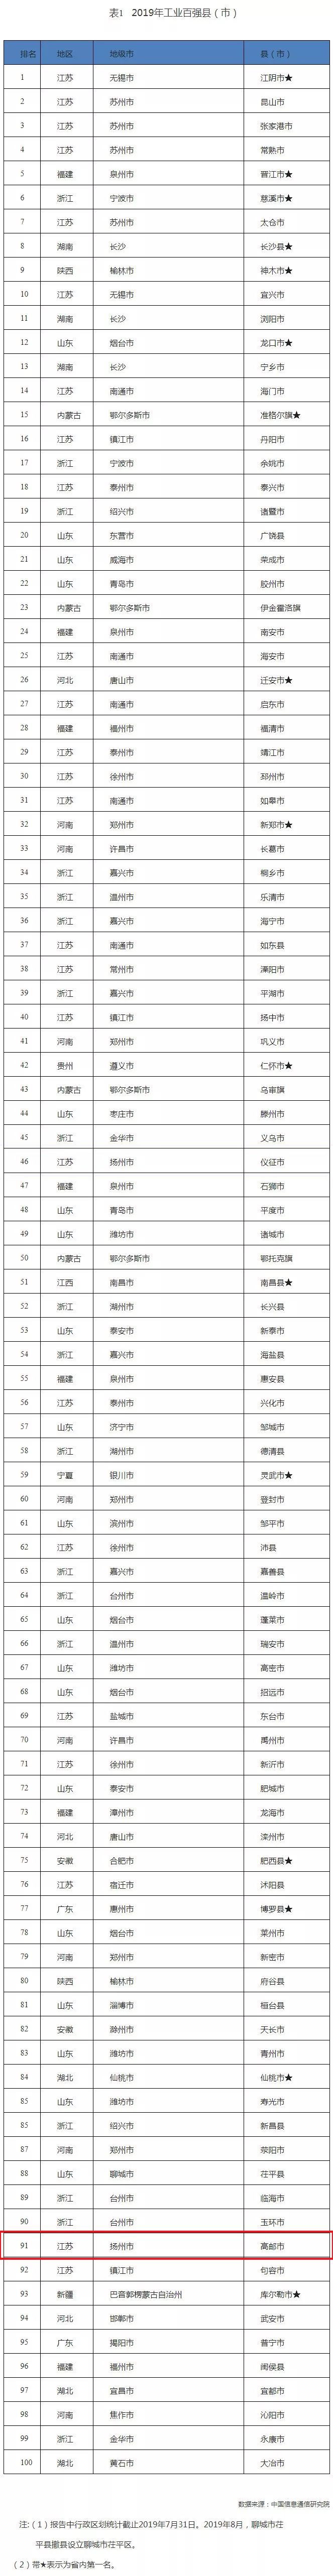 91排行_2017中国最好学科排名91个头牌学科分布在42校